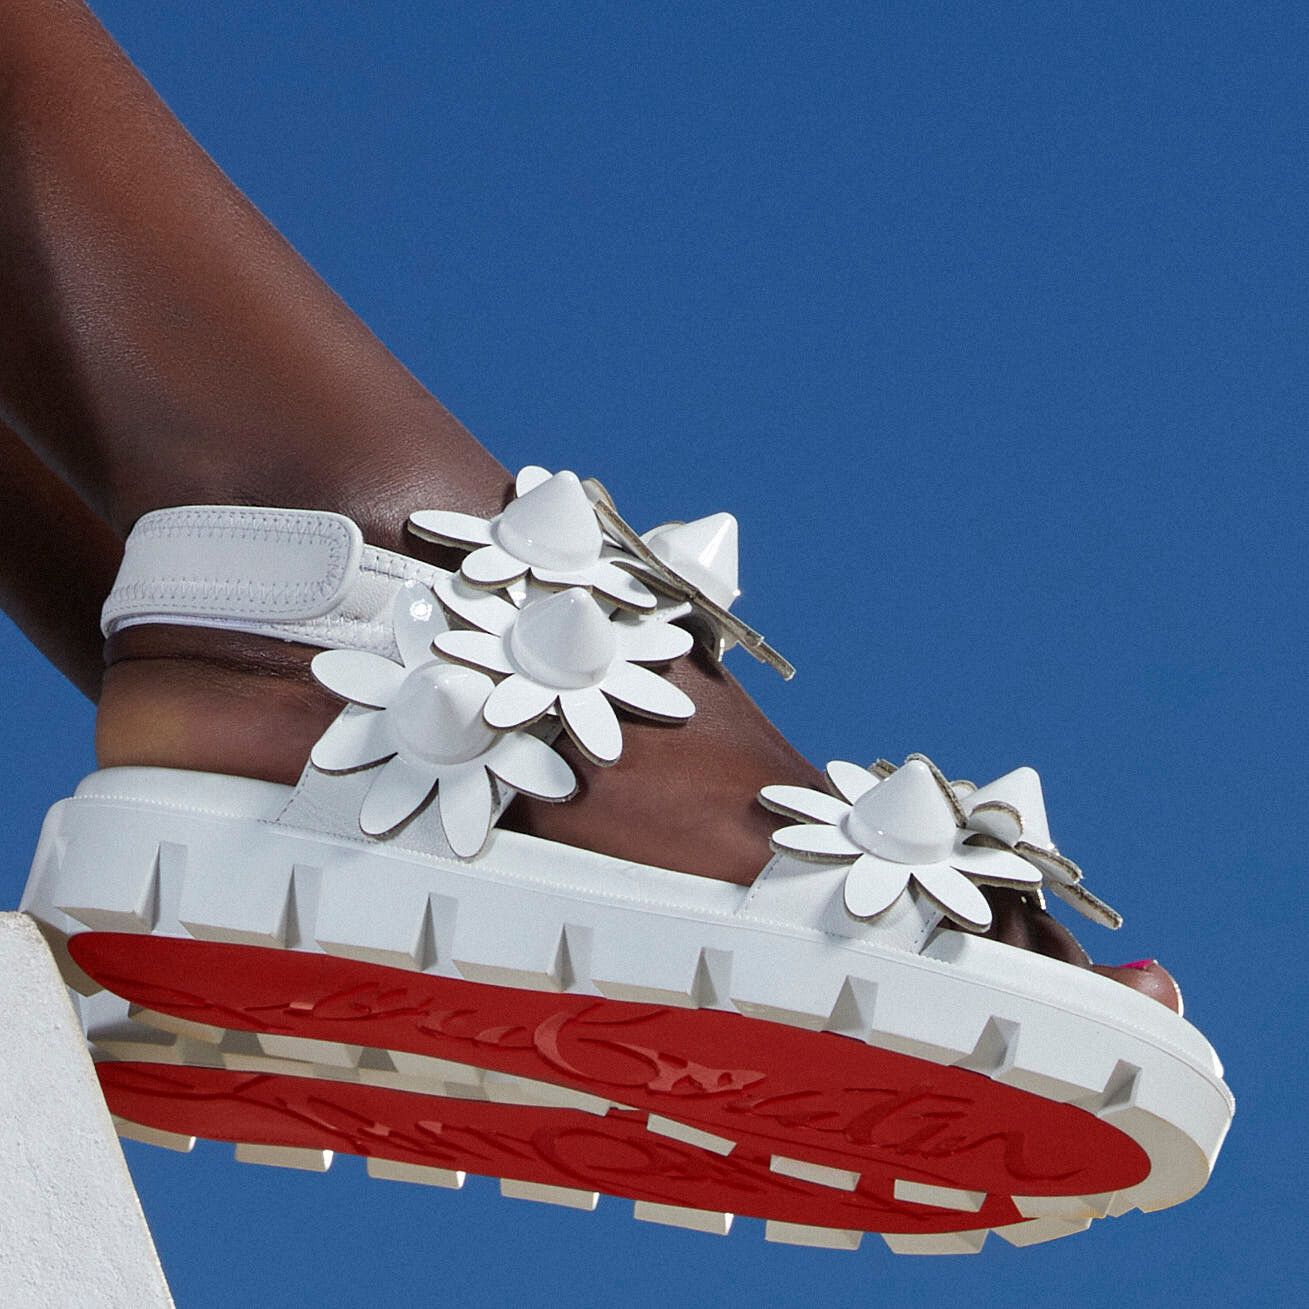 Daisy spikes sandals Christian Louboutin 5-22.jpg